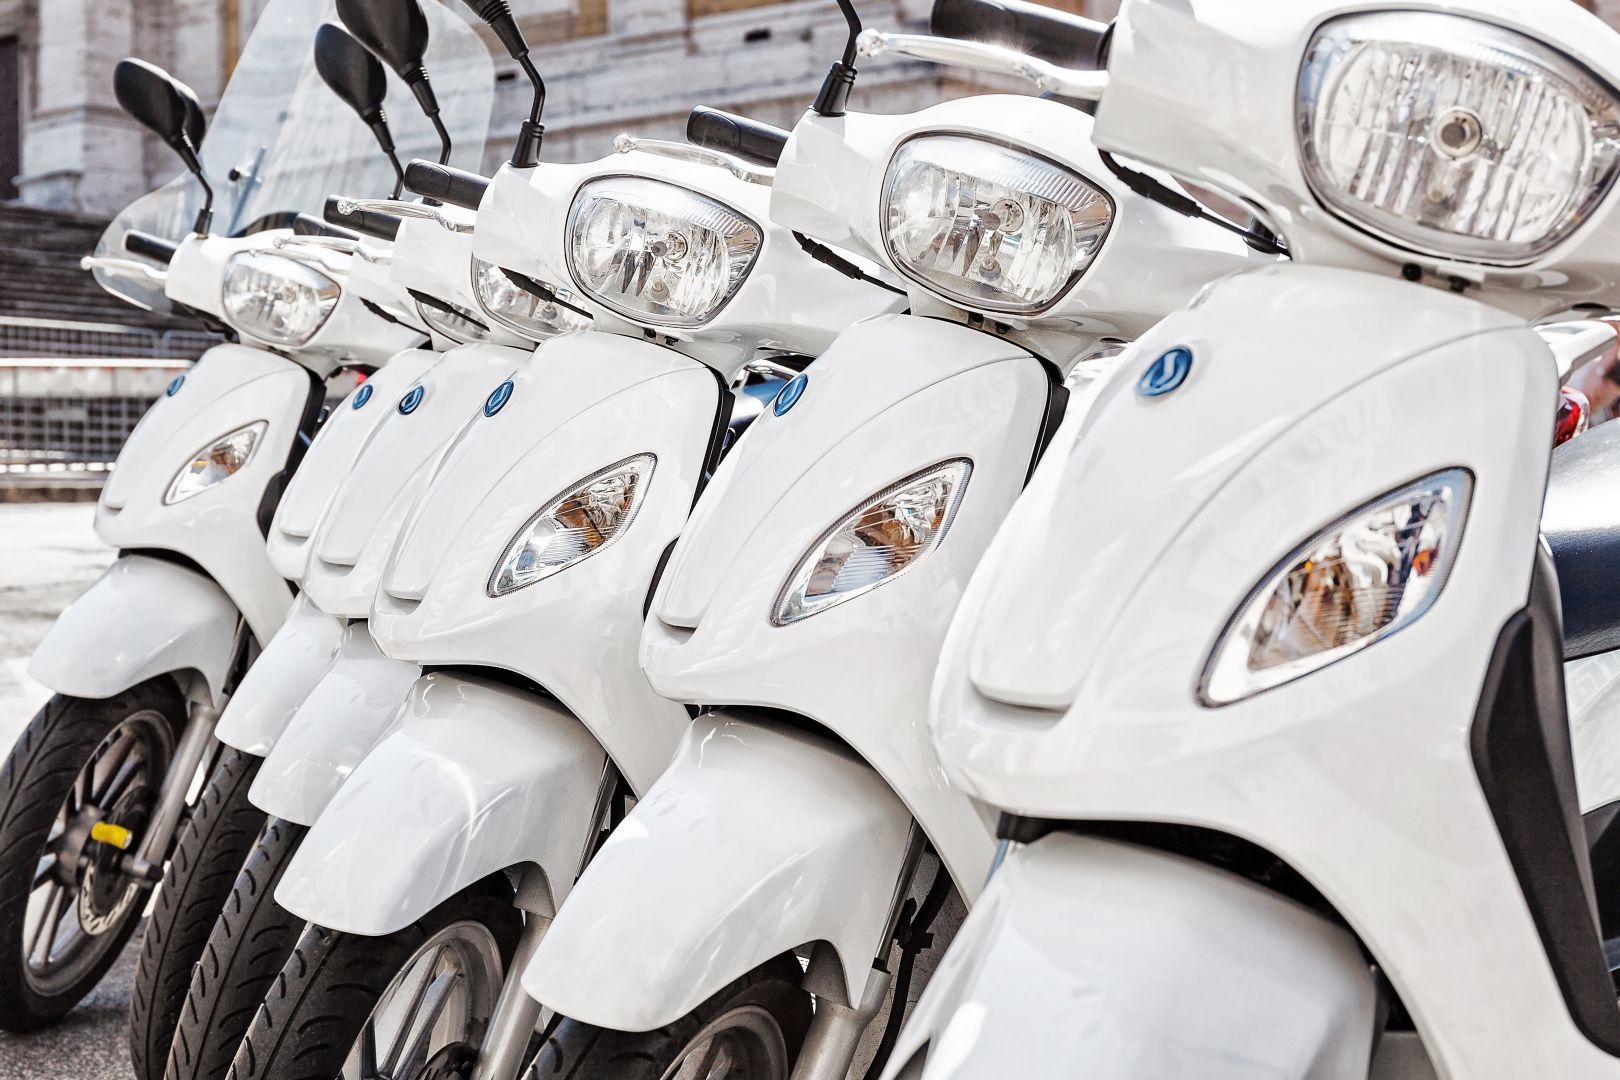 Poptávka na dovozce, motocykly pro motodílnu s možností prodeje motocyklů (Prodej) - Cheb